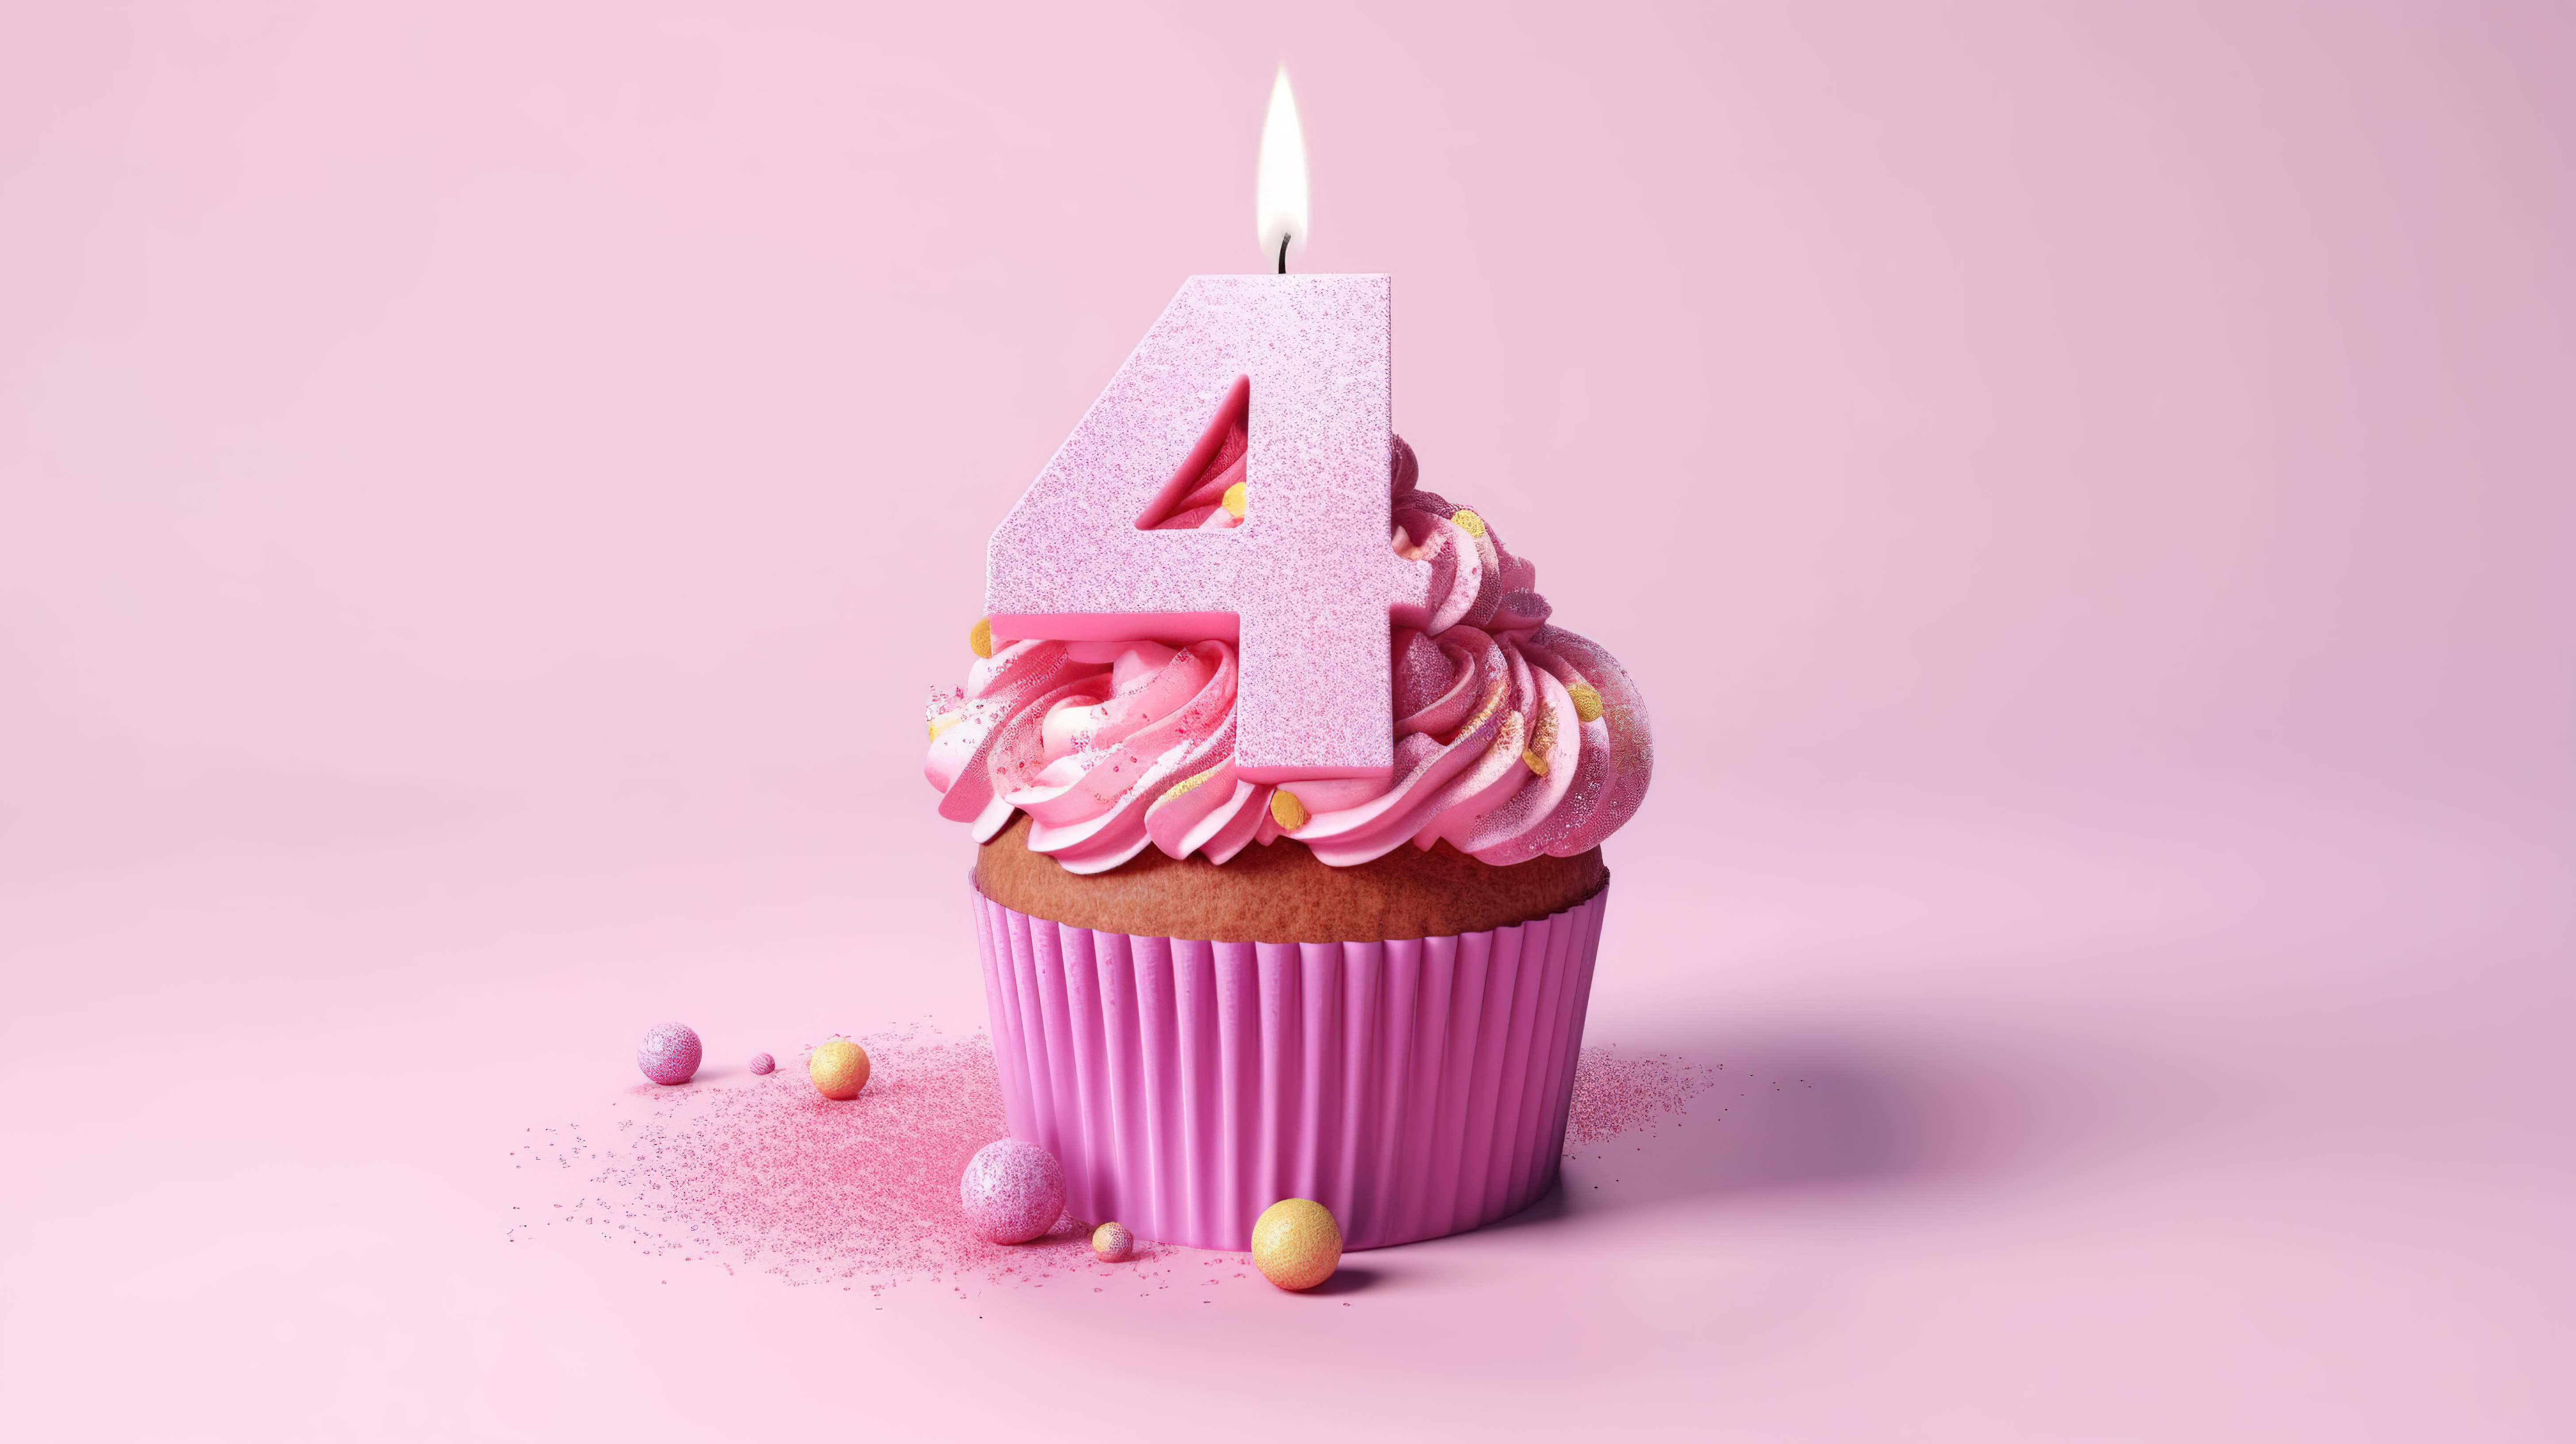 3D 渲染的粉红色蛋糕，以 45 岁生日为主题图片